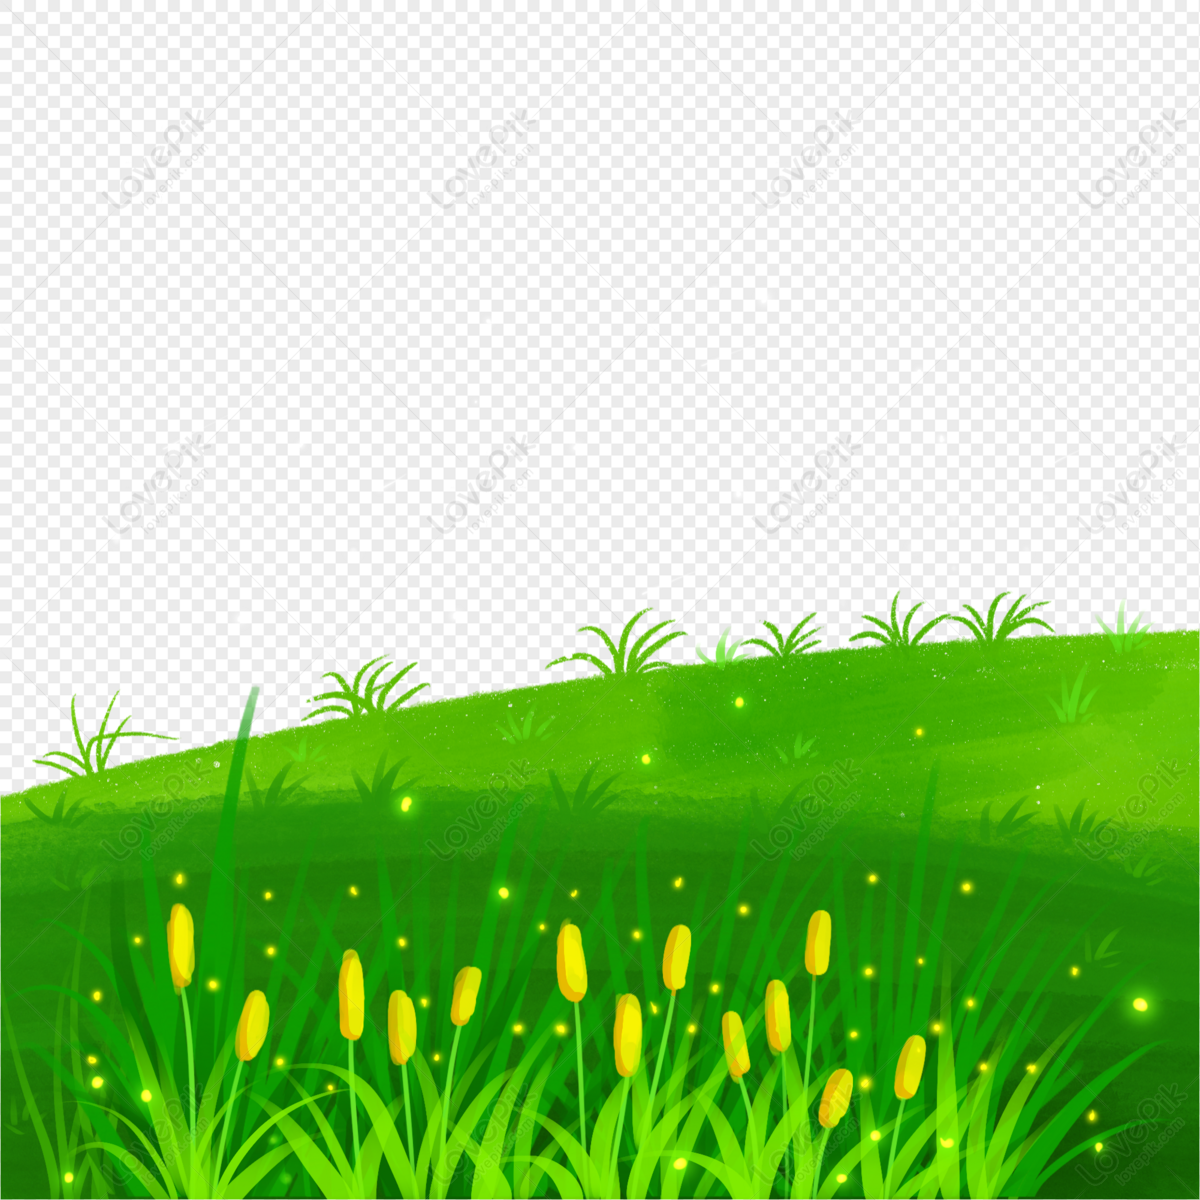 Hình ảnh cây cỏ miễn phí sẽ đem đến cho bạn không gian xanh-mát và tươi mới tuyệt vời để giúp bạn nâng cao thị giác của mình. Hình ảnh cỏ được chụp bằng độ phân giải cao, với chất lượng rực rỡ và chi tiết sắc nét. Các bạn có thể sử dụng nó để trang trí nhà cửa hoặc cho bất kỳ mục đích nào khác.